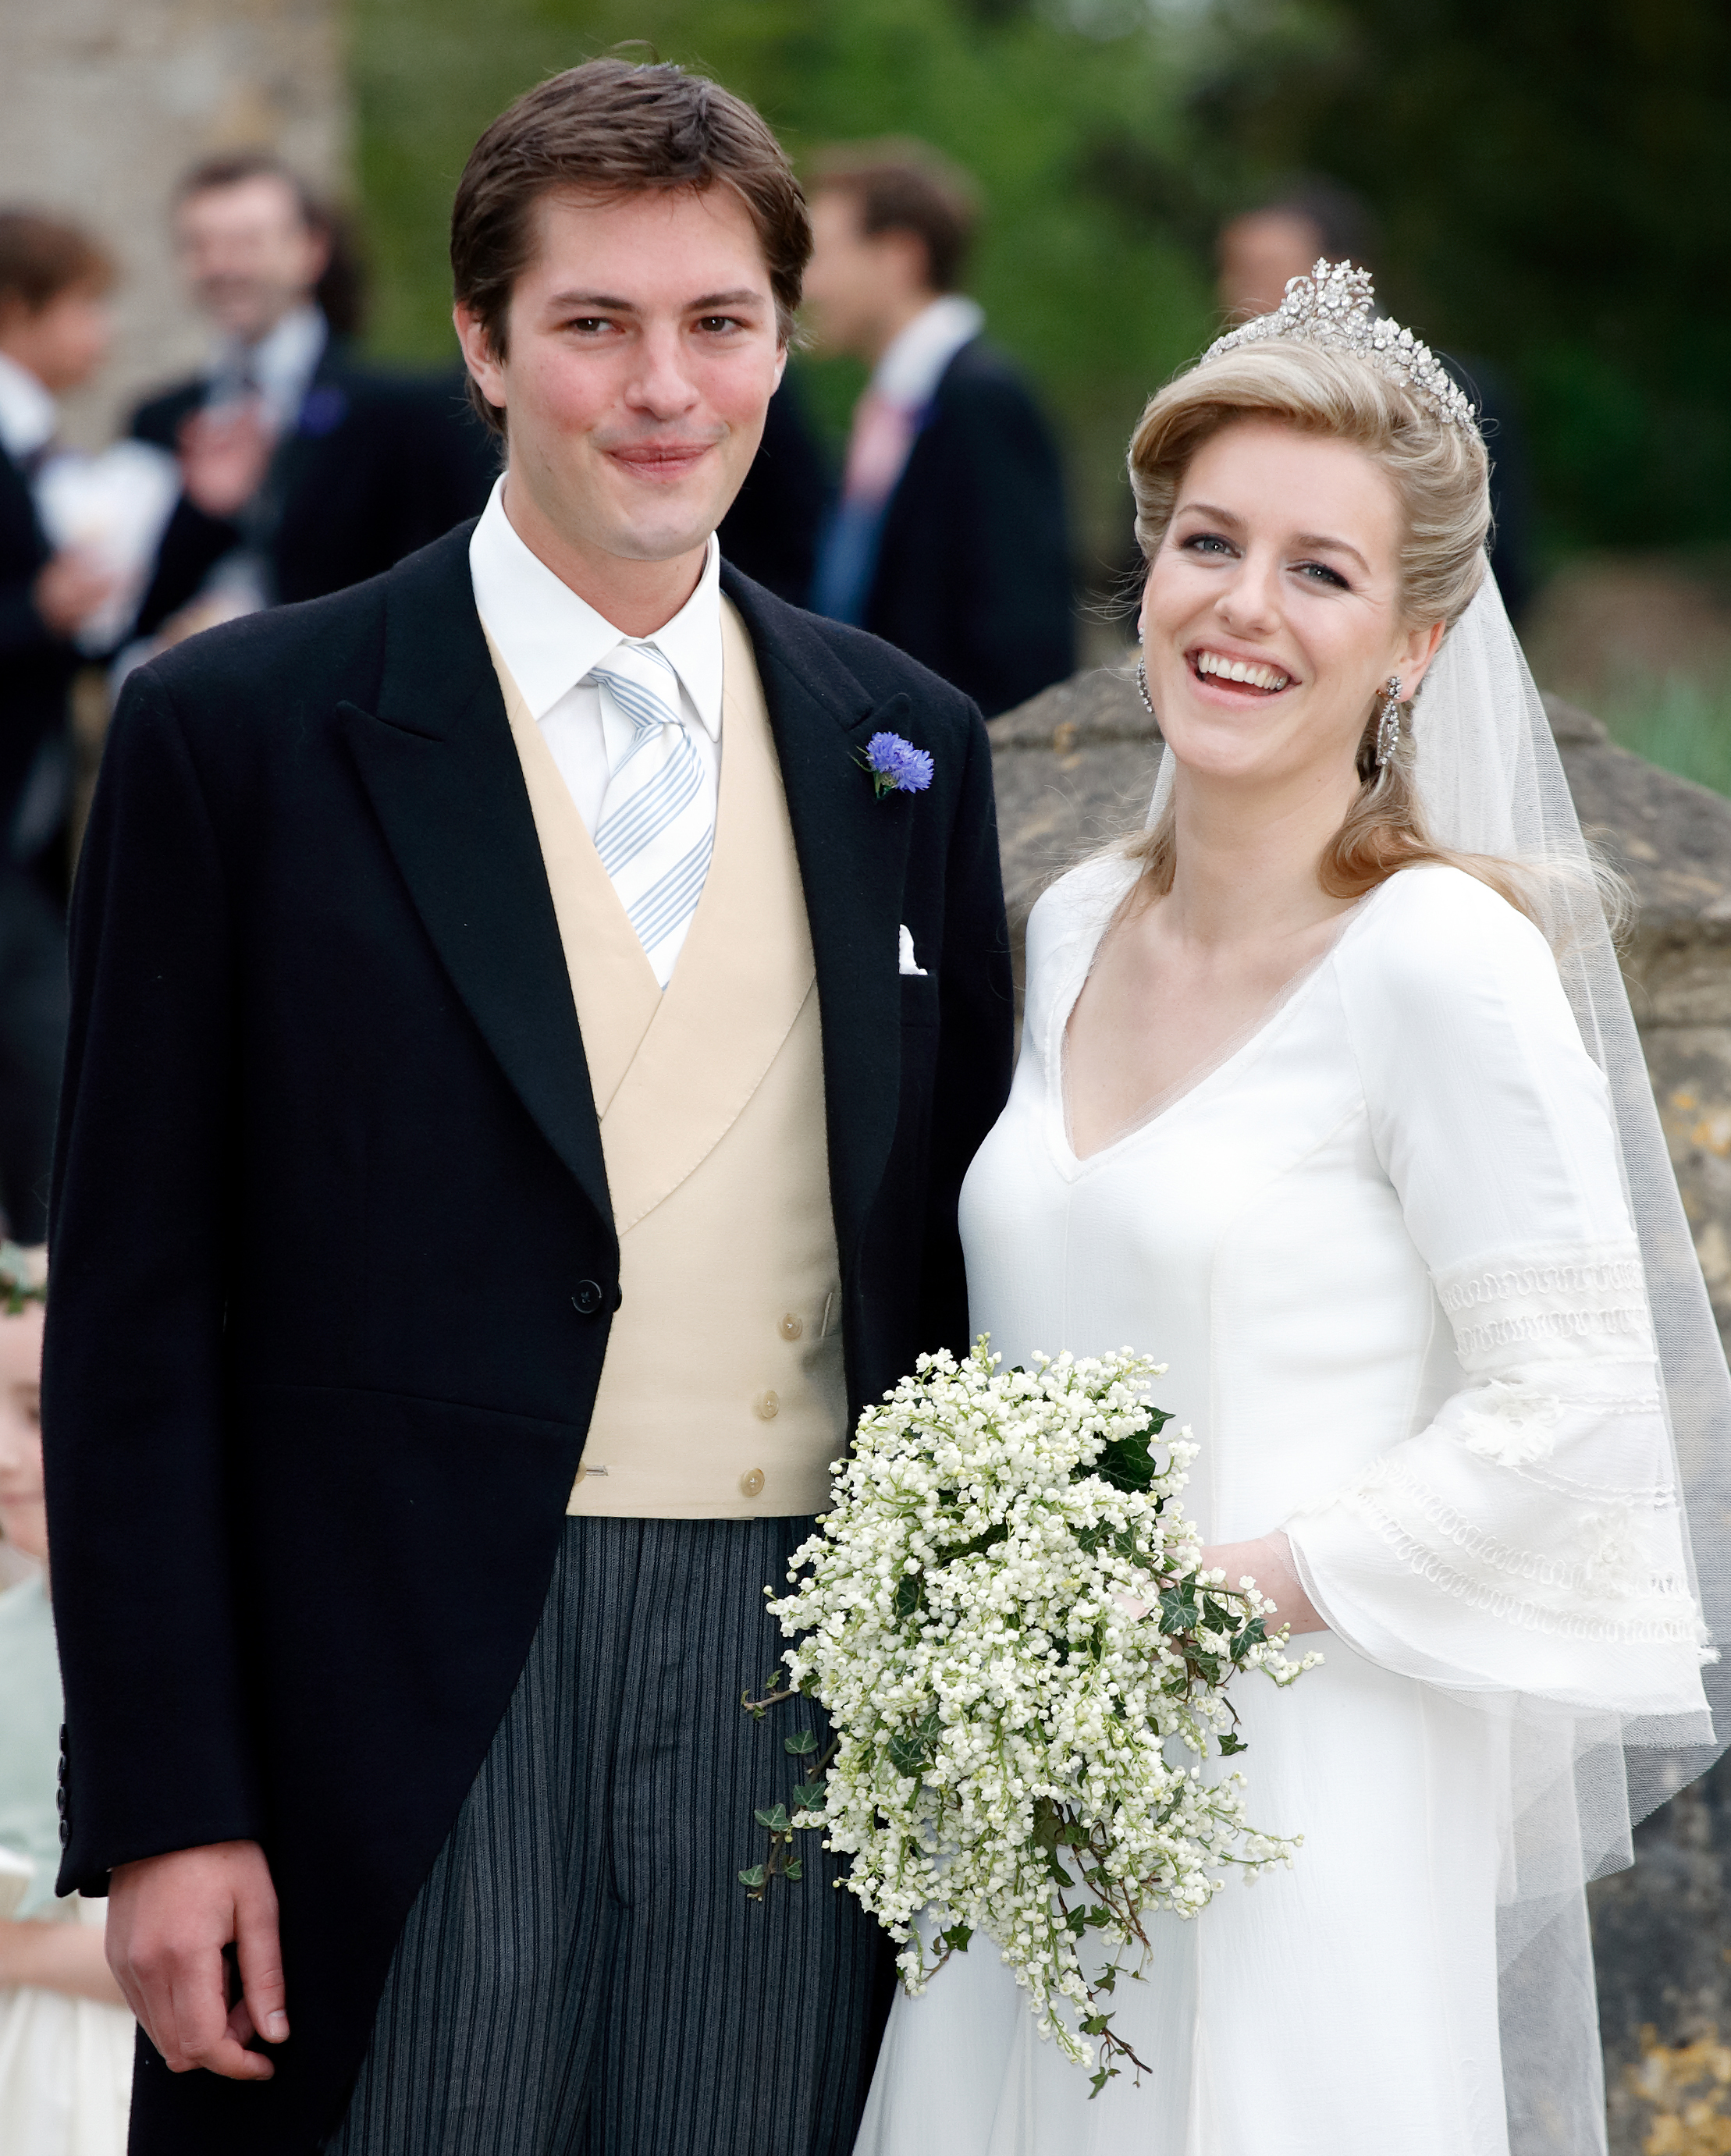 Harry Lopes und Laura Parker Bowles nach ihrer Hochzeit in der St. Cyriac's Church am 6. Mai 2006 in Lacock, England. | Quelle: Getty Images